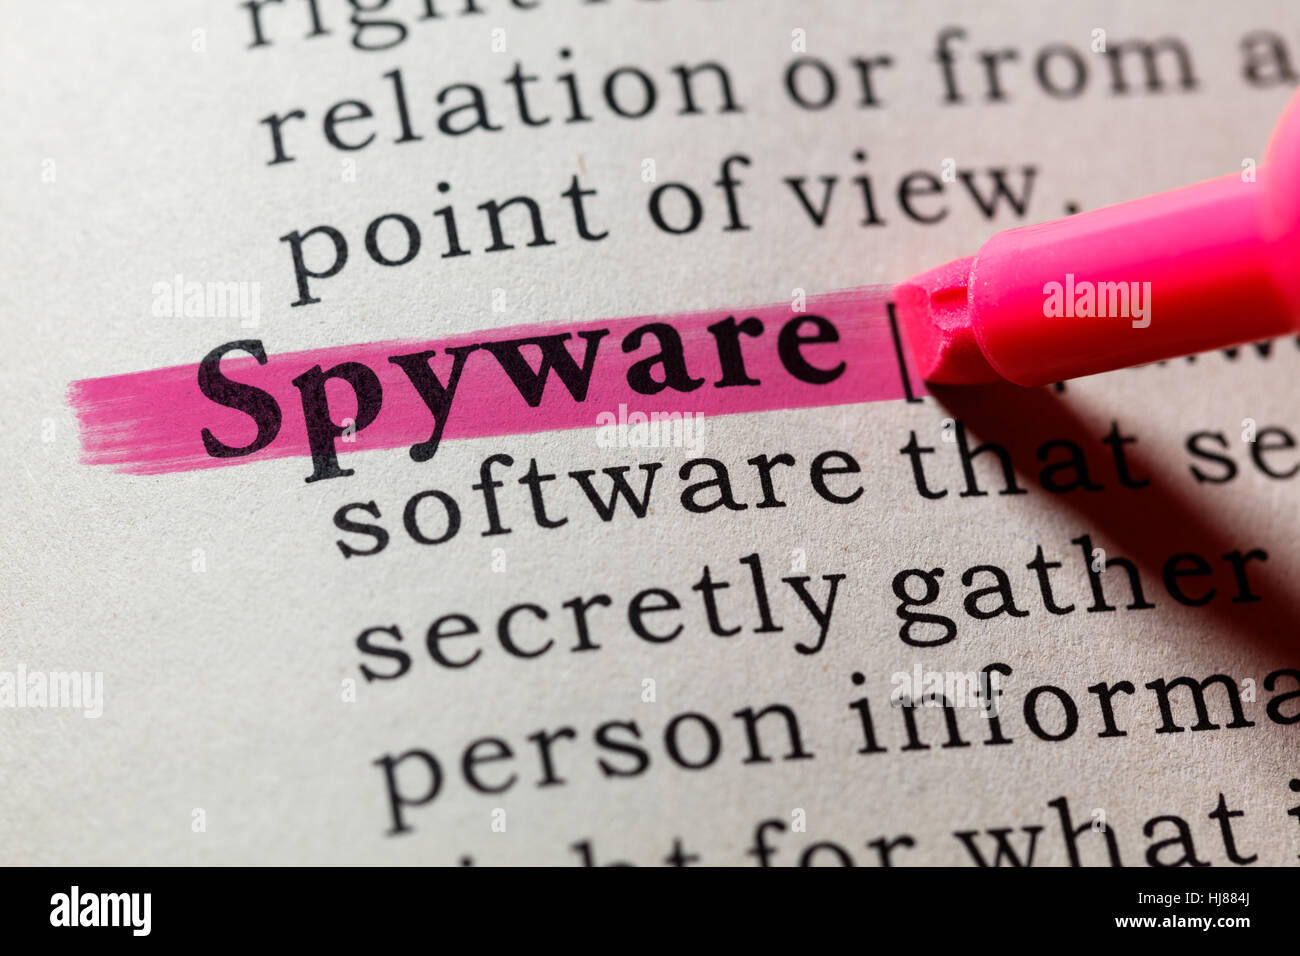 Fake Dizionario, definizione del dizionario della parola spyware. comprendente i principali parole descrittive. Foto Stock